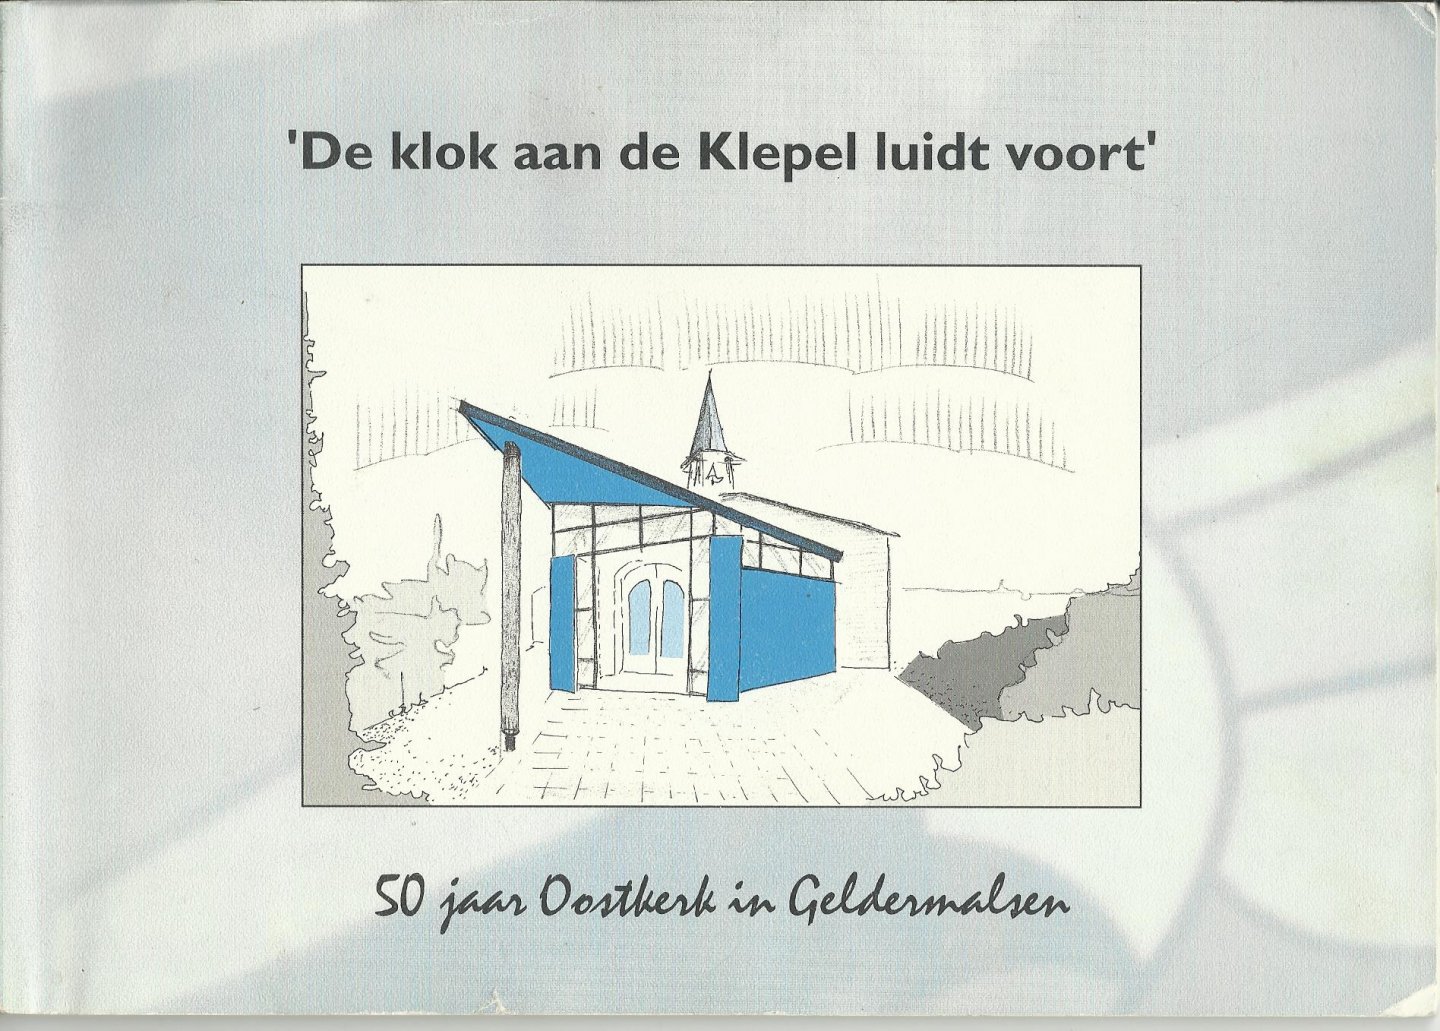 Timmer, R.D., Kleef-Verploeg, van J.H. - De klok aan de Klepel luidt voort, 50 jaar Oostkerk Geldermalsen